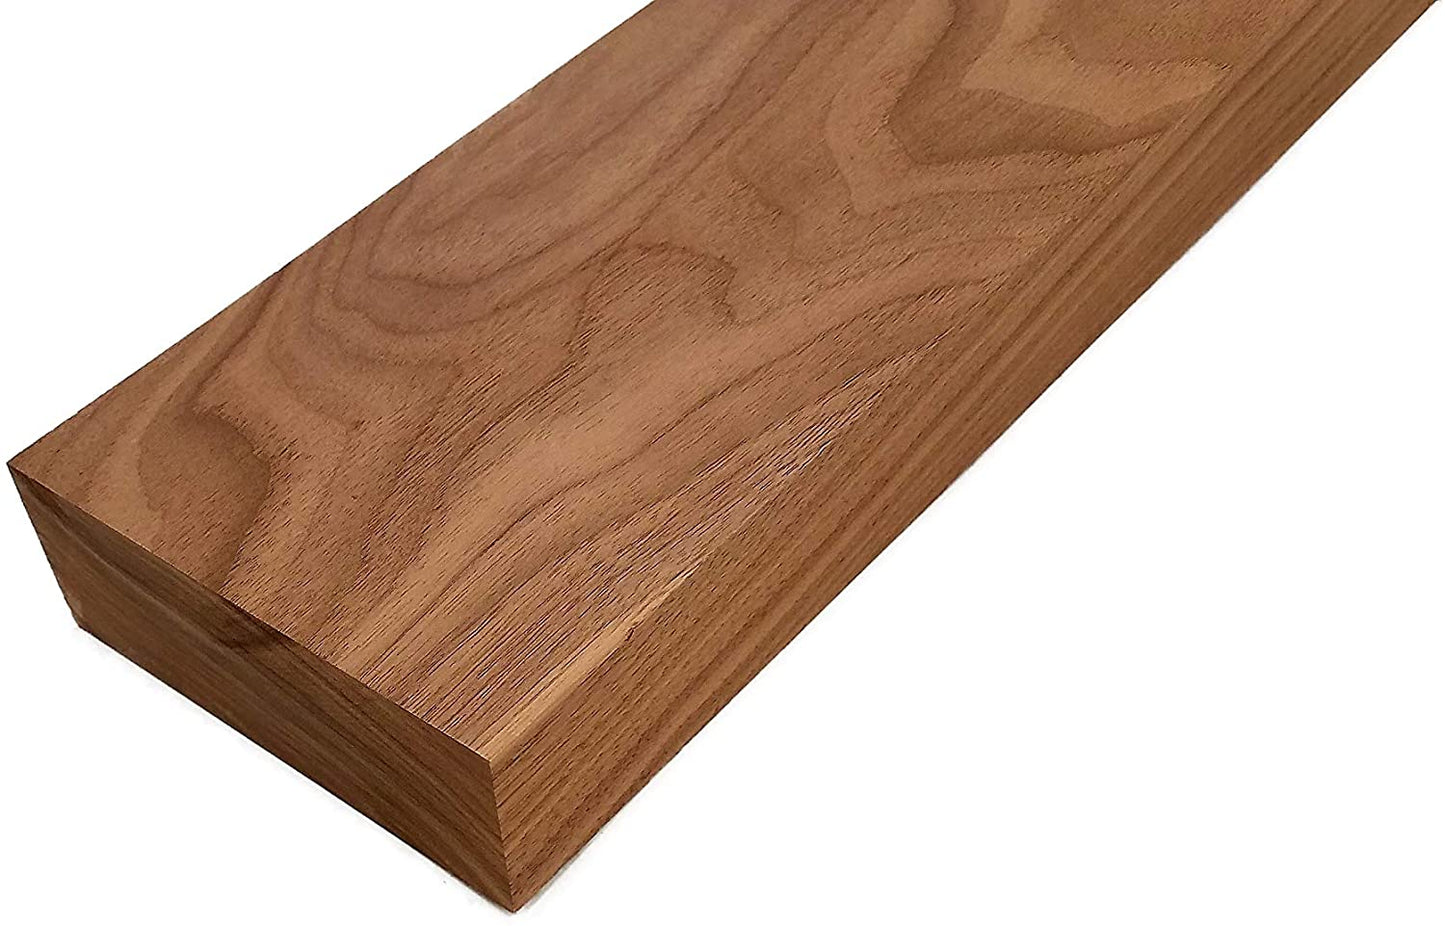 Walnut Lumber Board - 1 3/4" x 6"